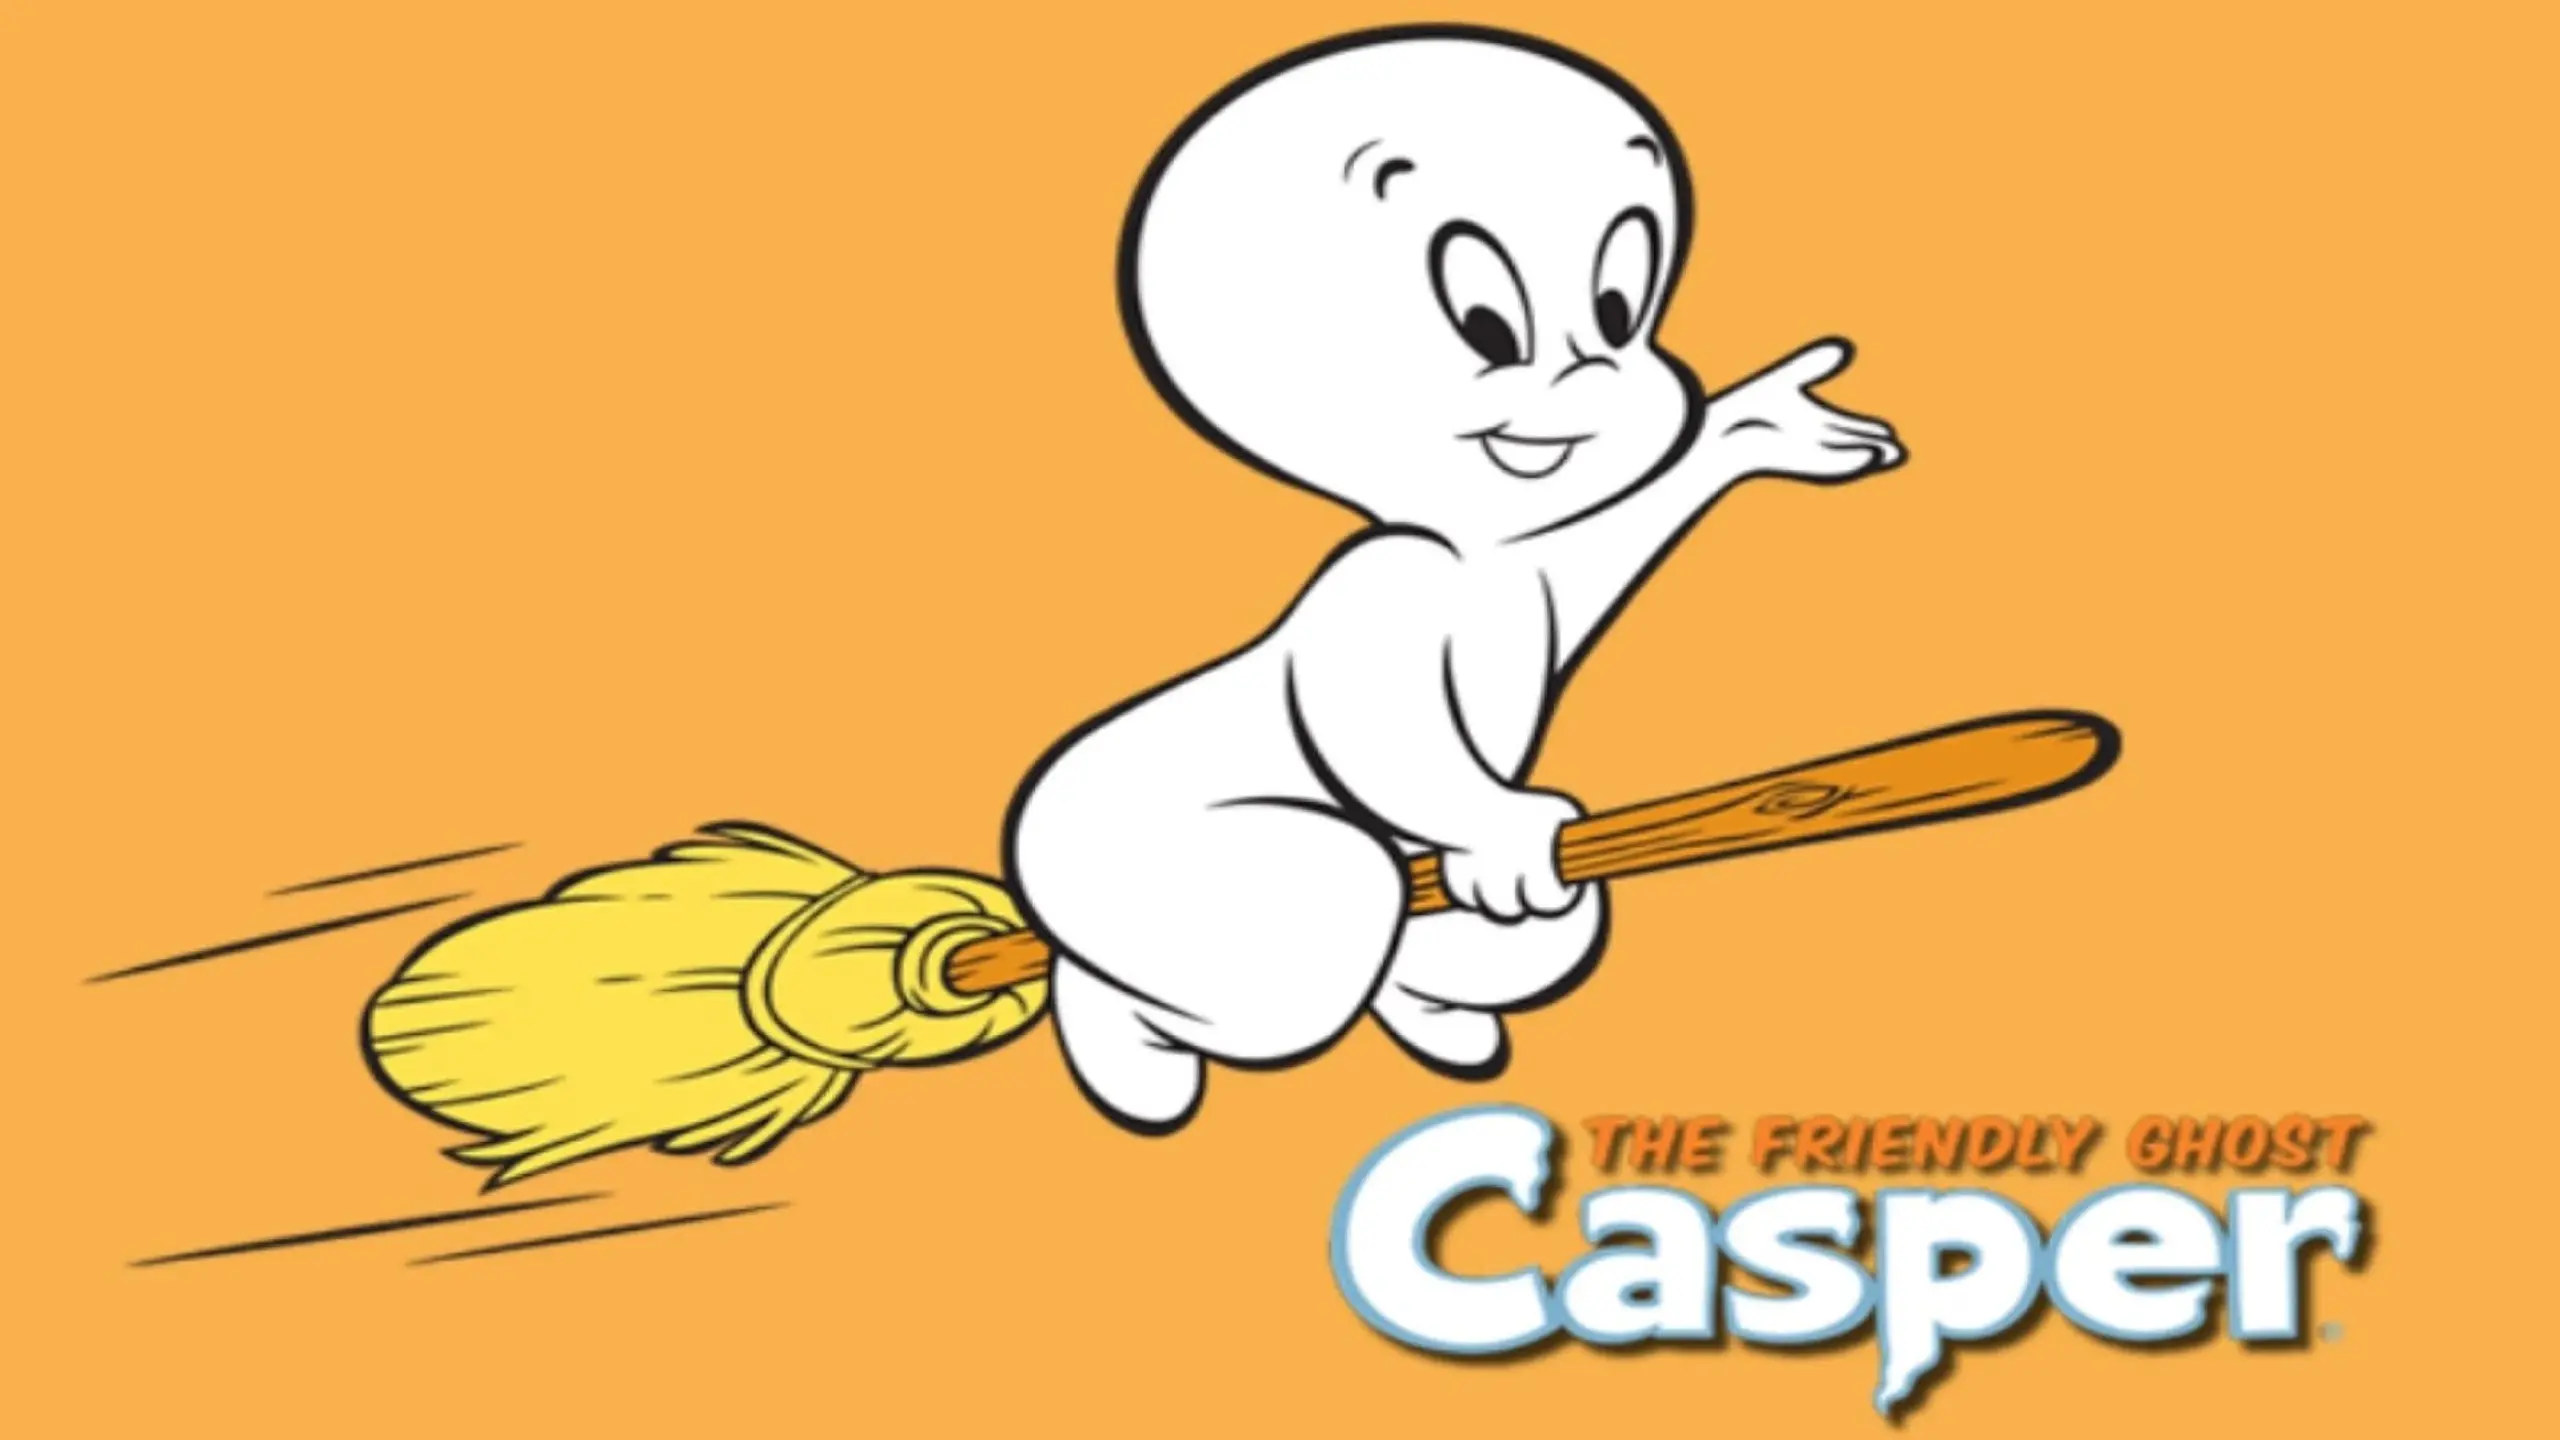 Casper und die Engel